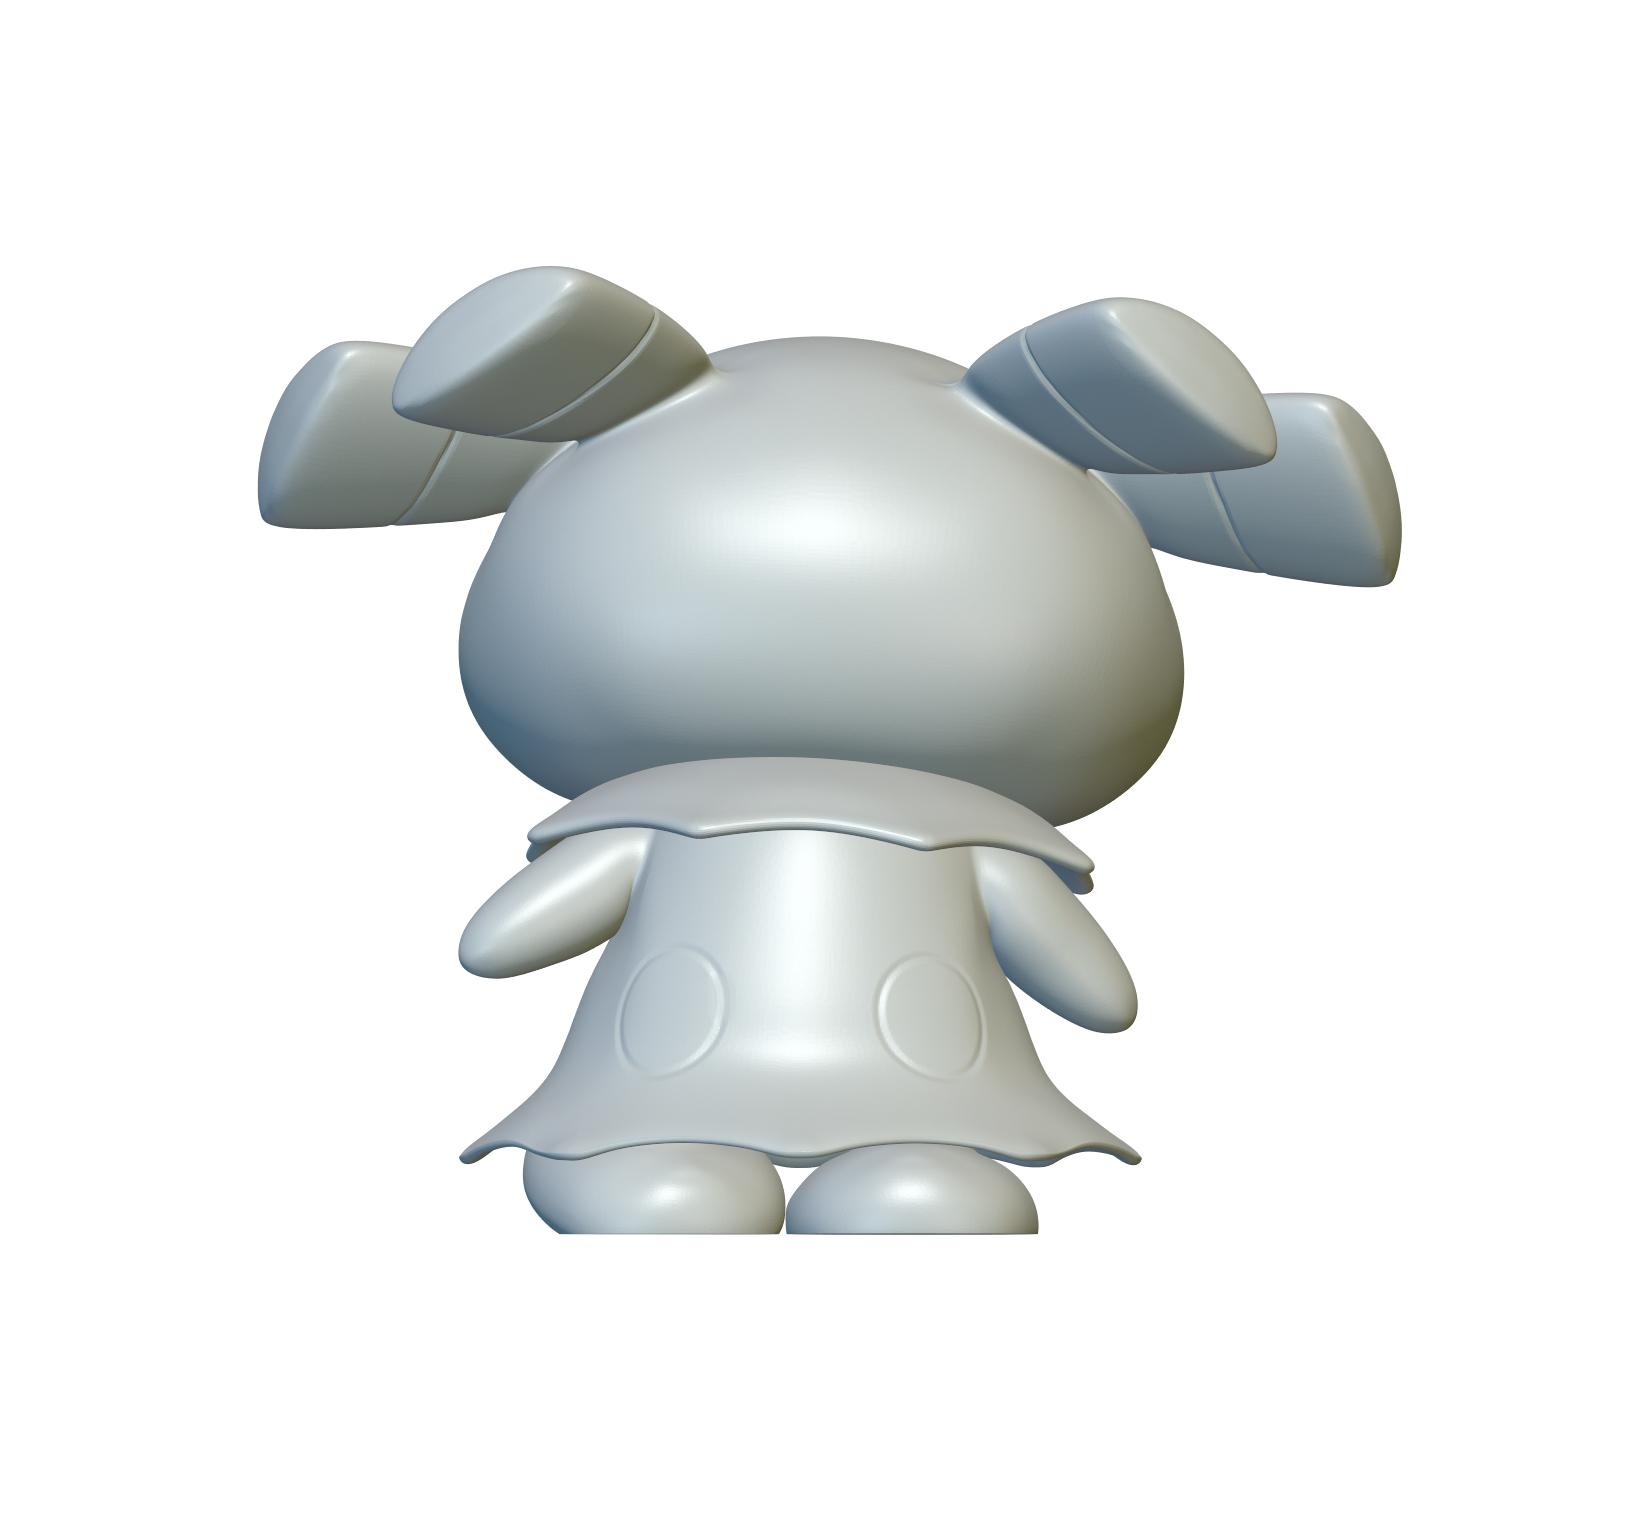 Pokemon Snubbull #209 - Optimized for 3D Printing 3d model